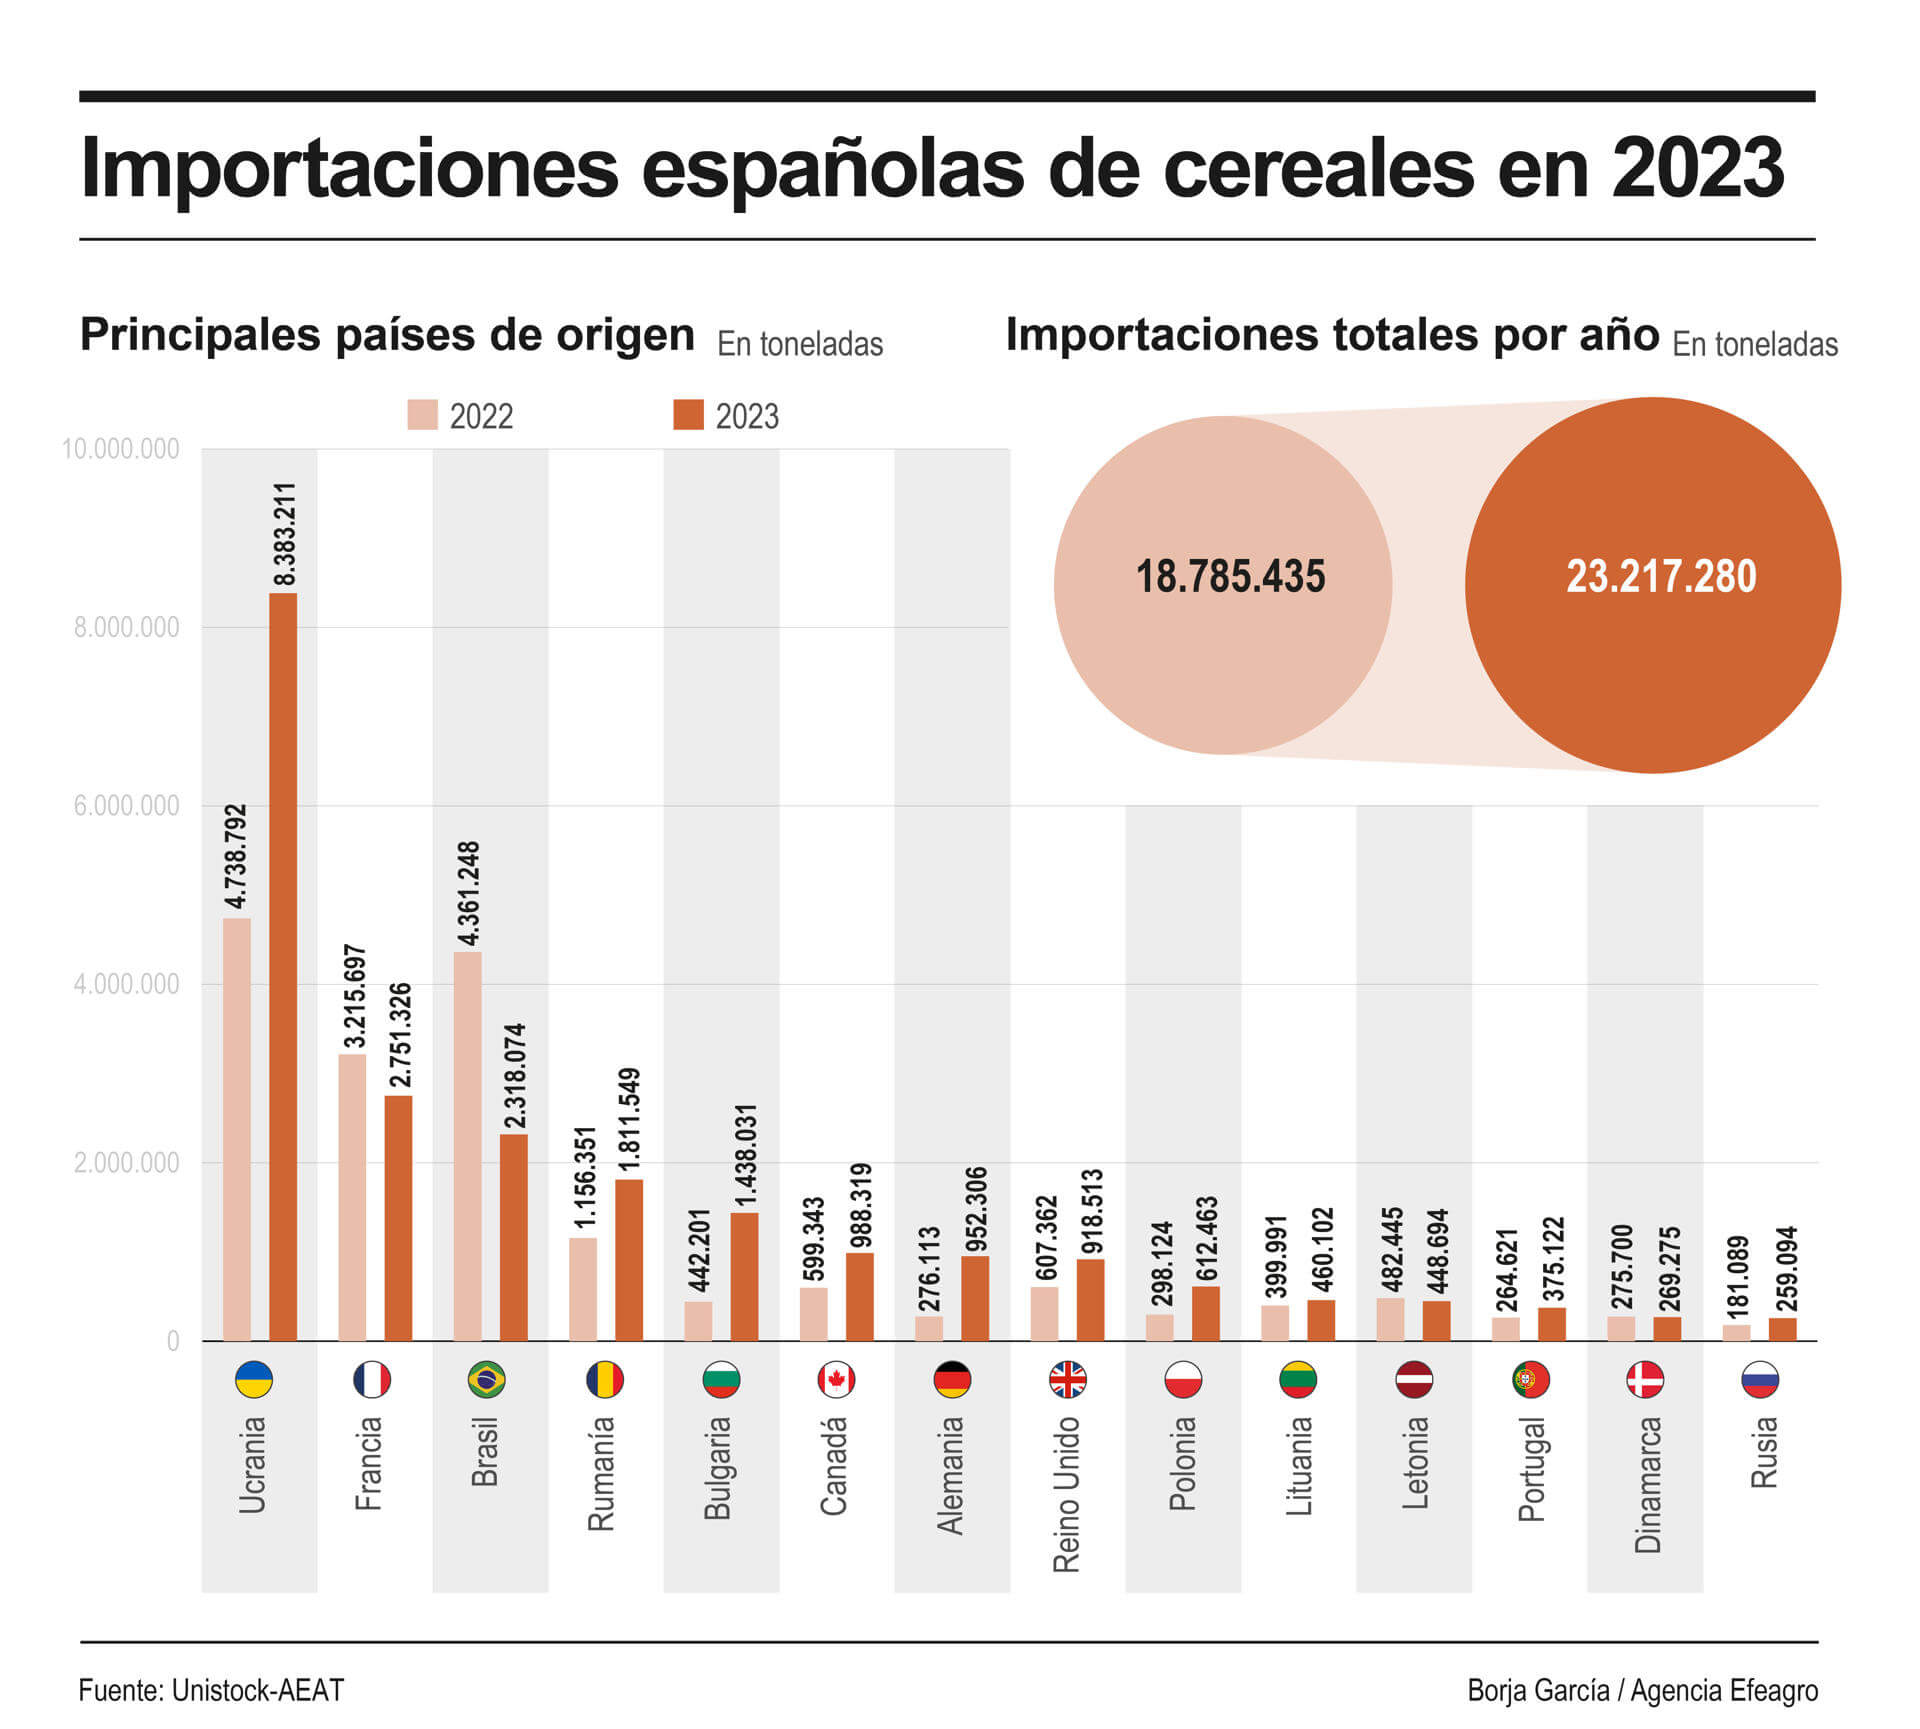 La importación española de cereal subió un 24 % en 2023 marcada por el influjo de Ucrania. EFE Agro.